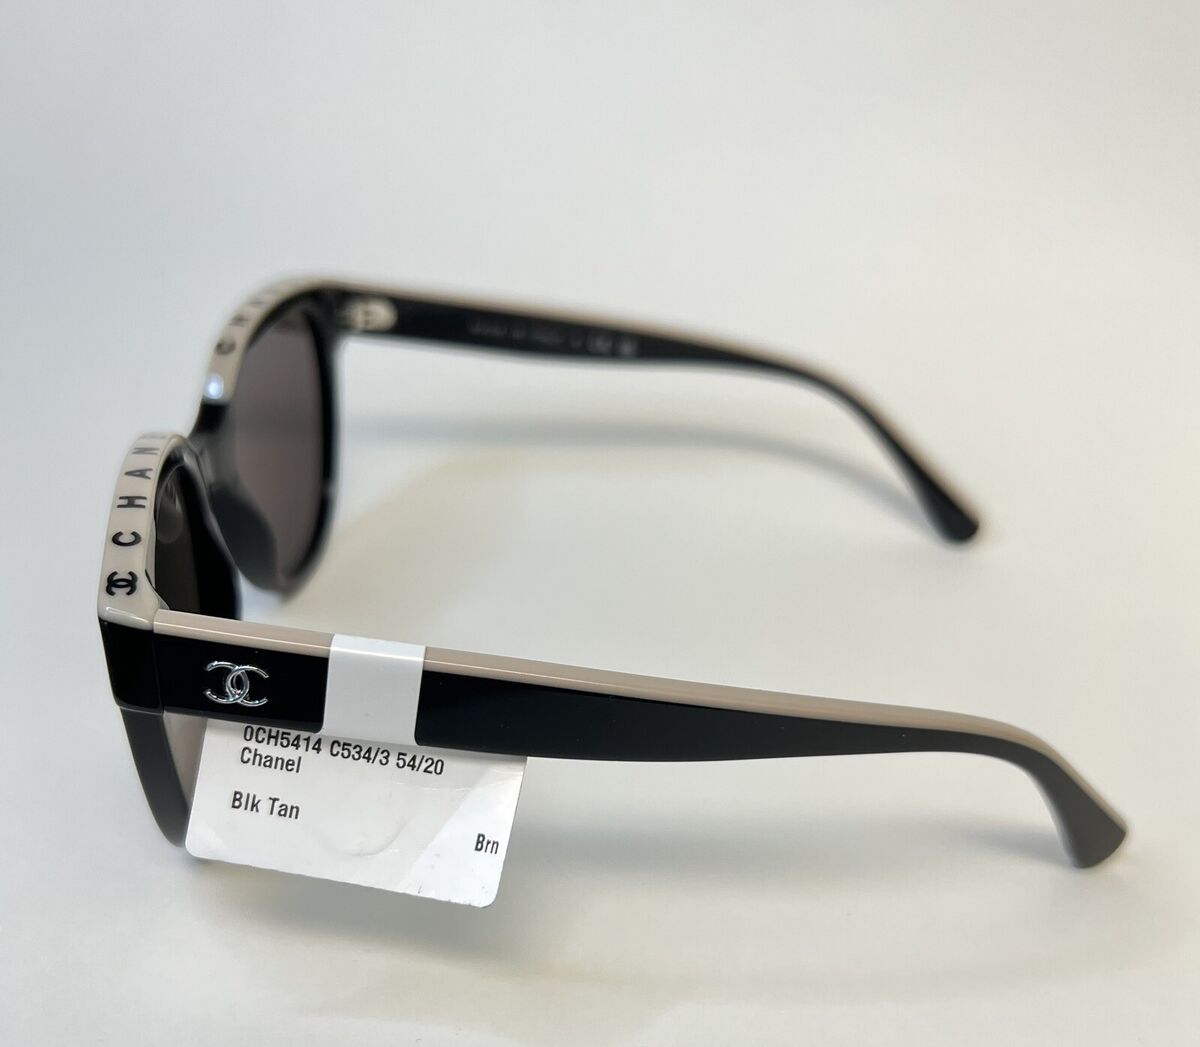 CHANEL CH5414/C534/3 - Sunglasses